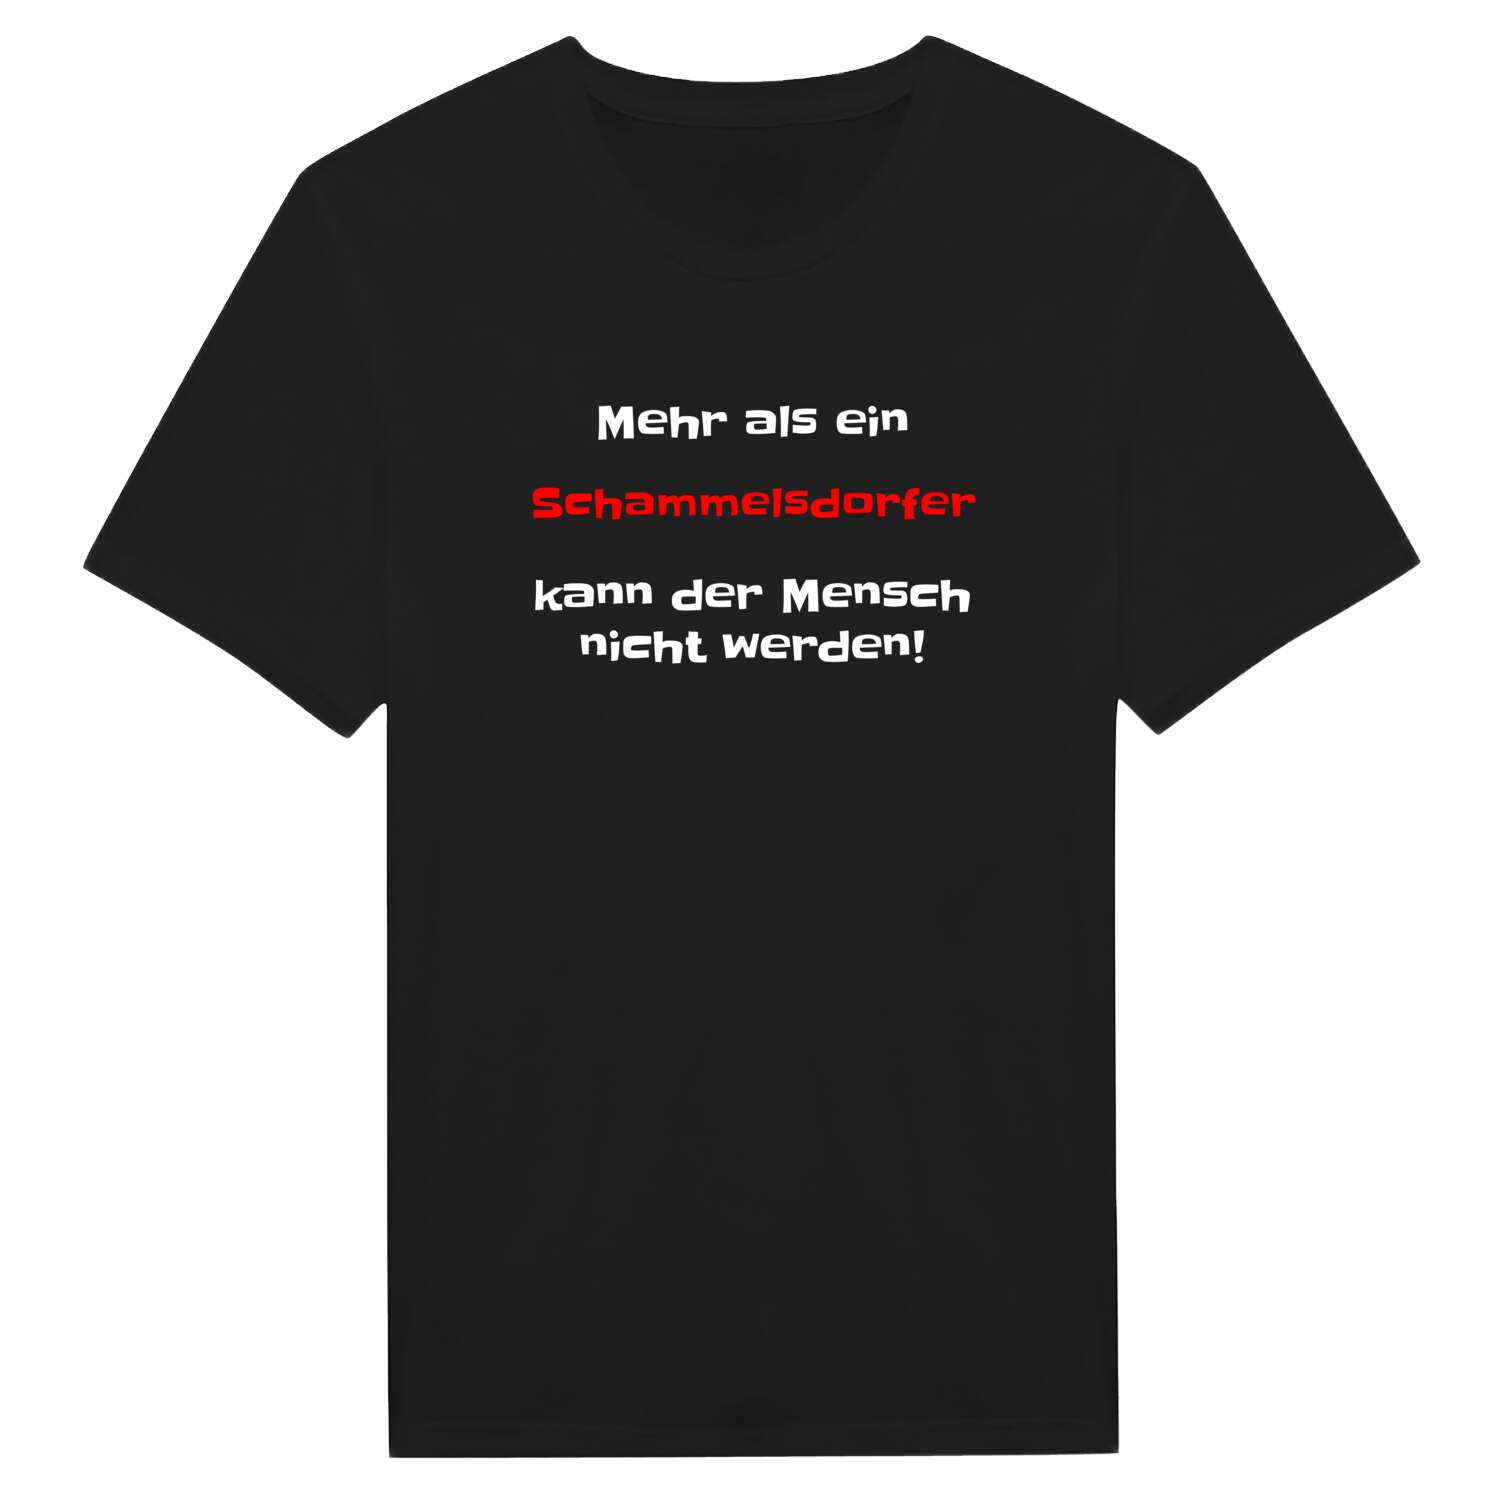 Schammelsdorf T-Shirt »Mehr als ein«